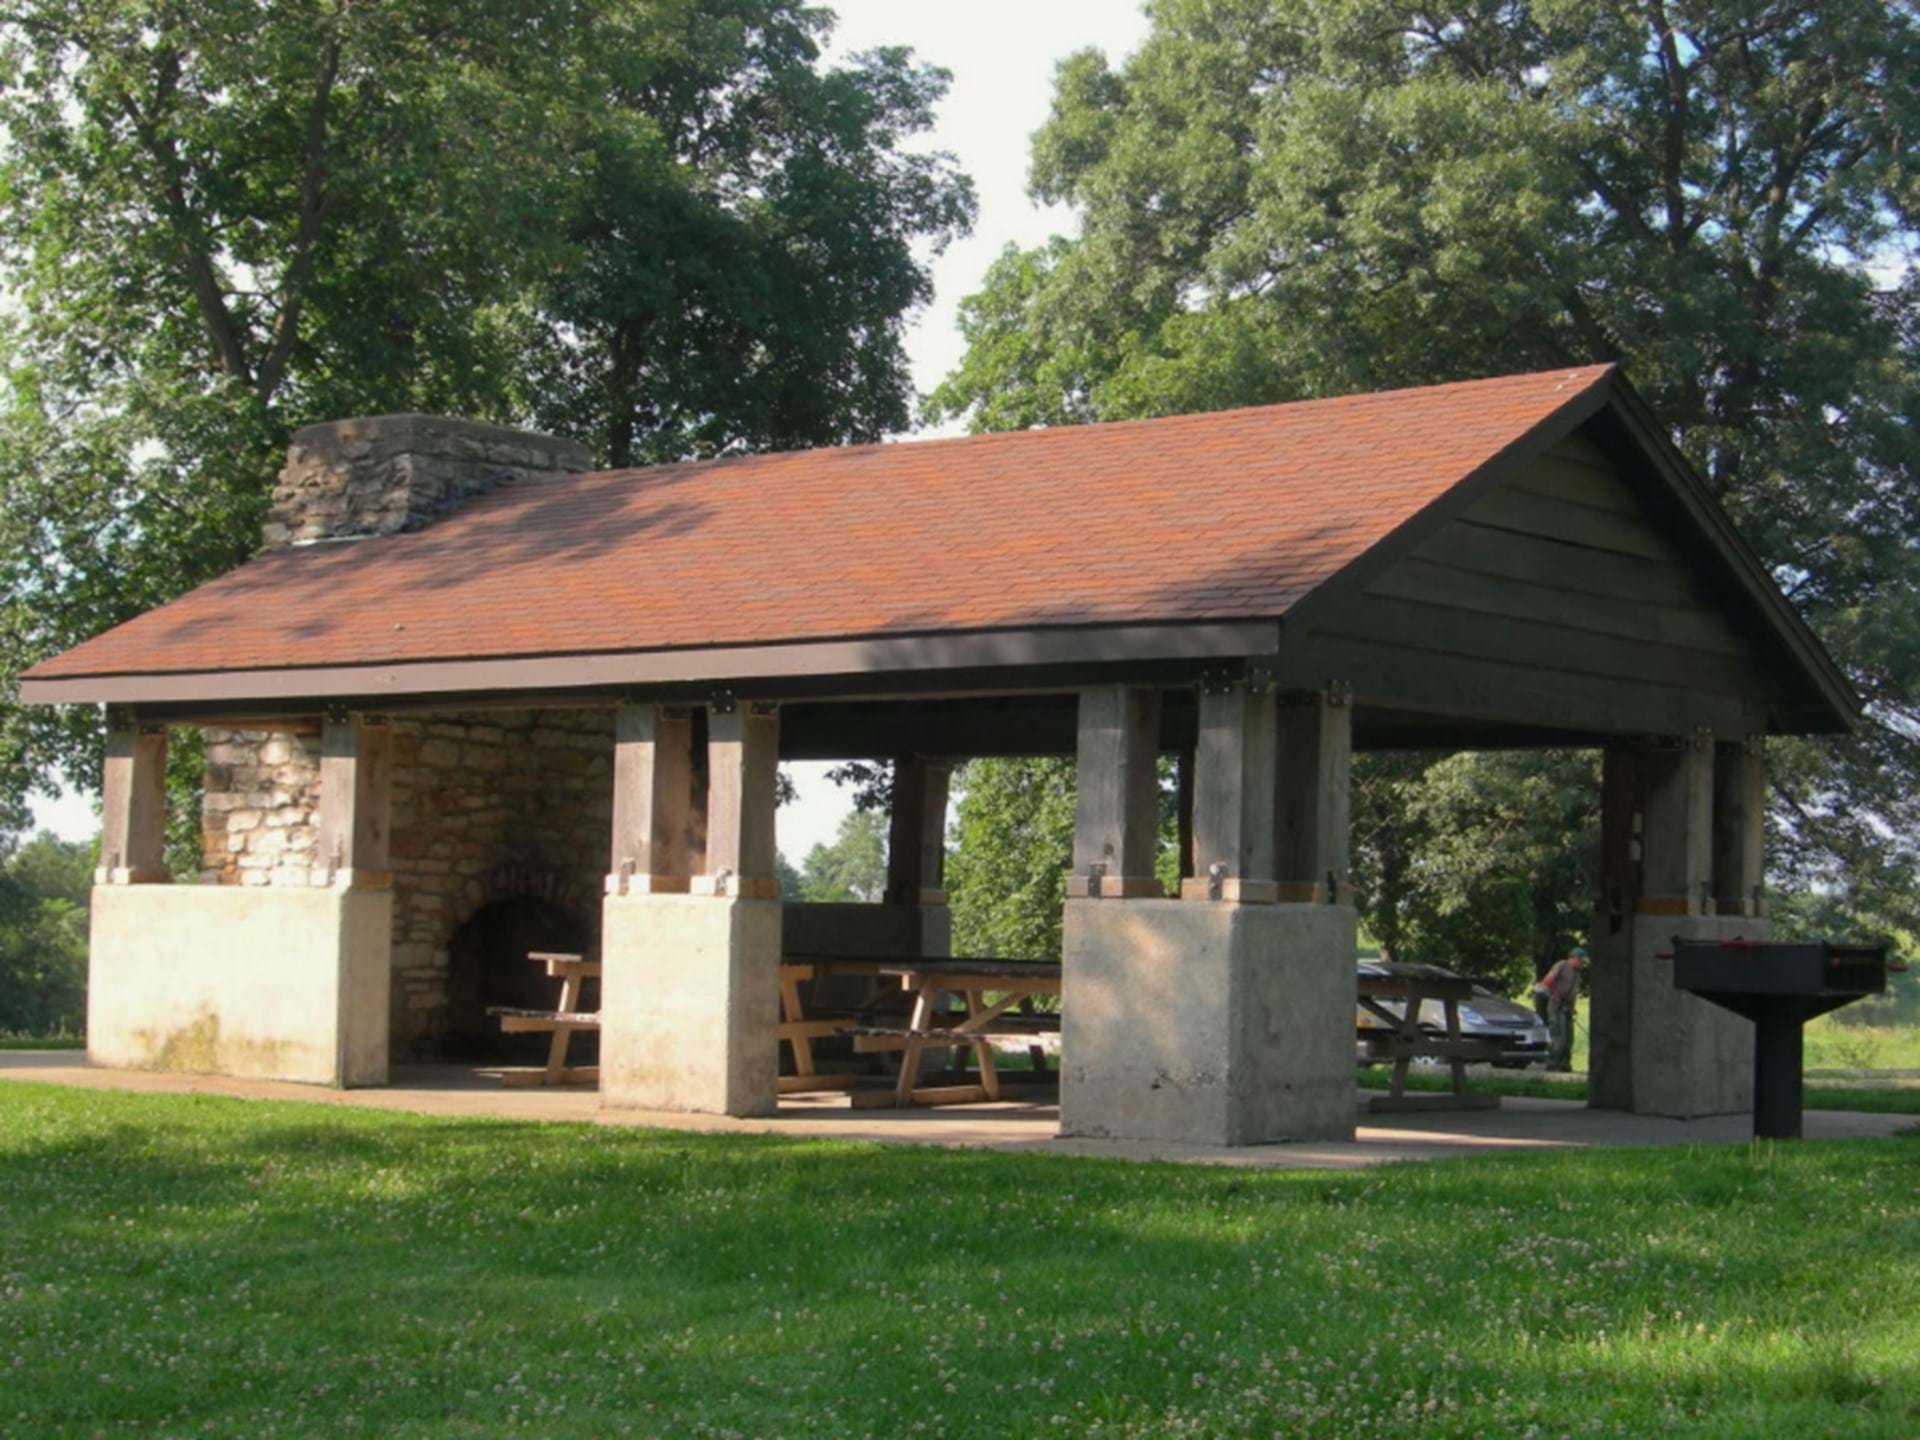 The picnic shelter at Lelah Bradley Park.